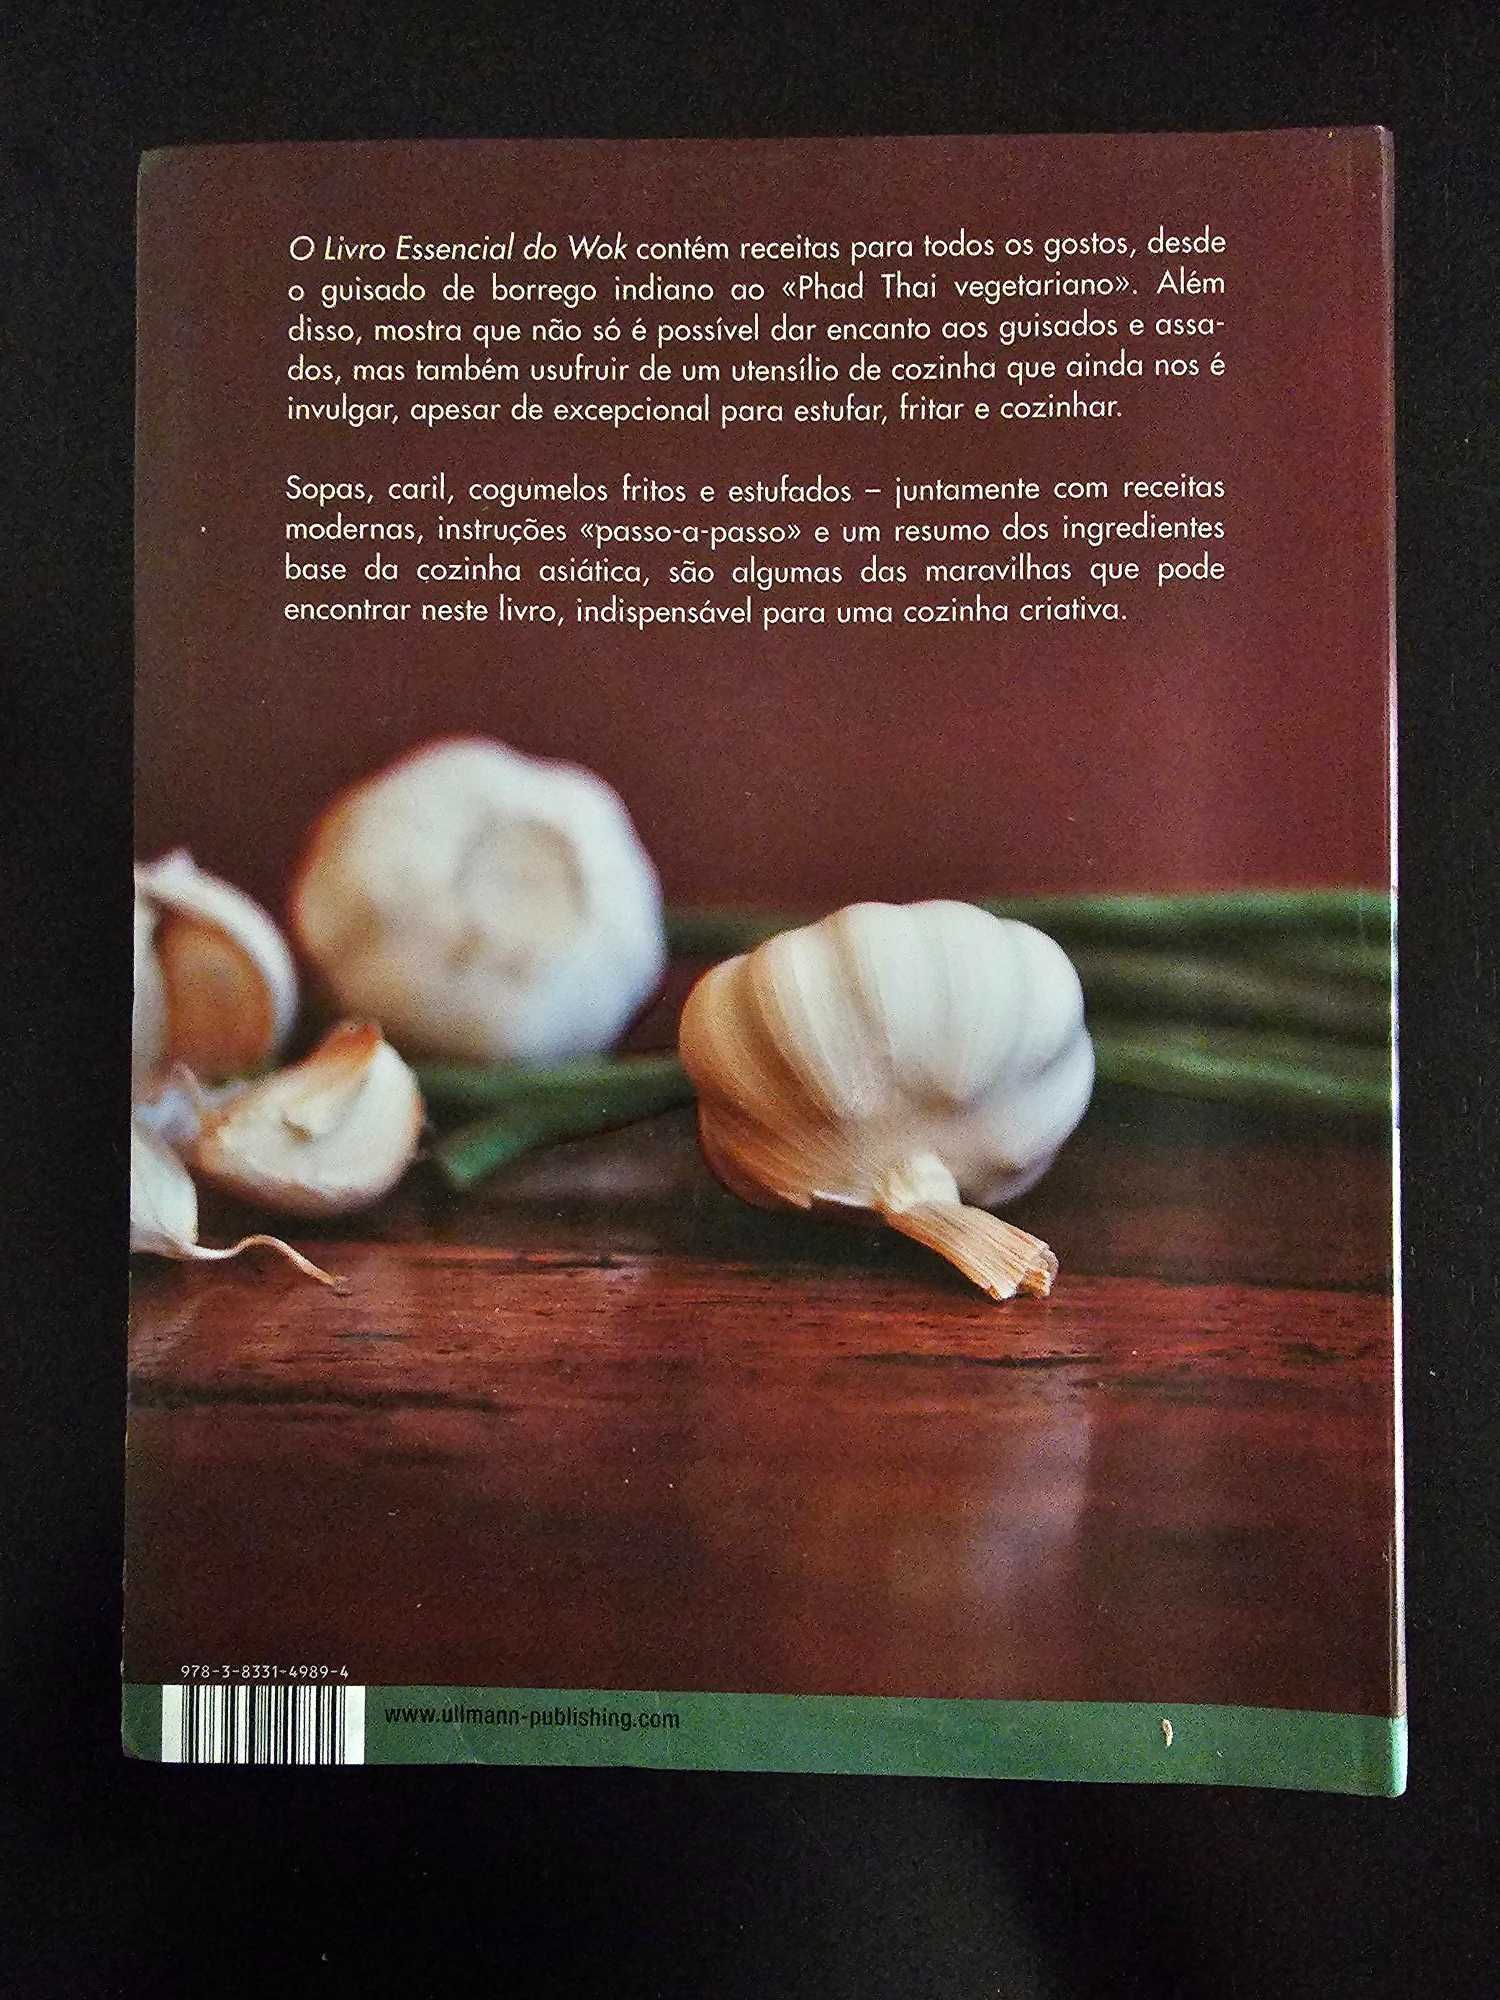 Livro Culinánria WOK - Portes Incluidos